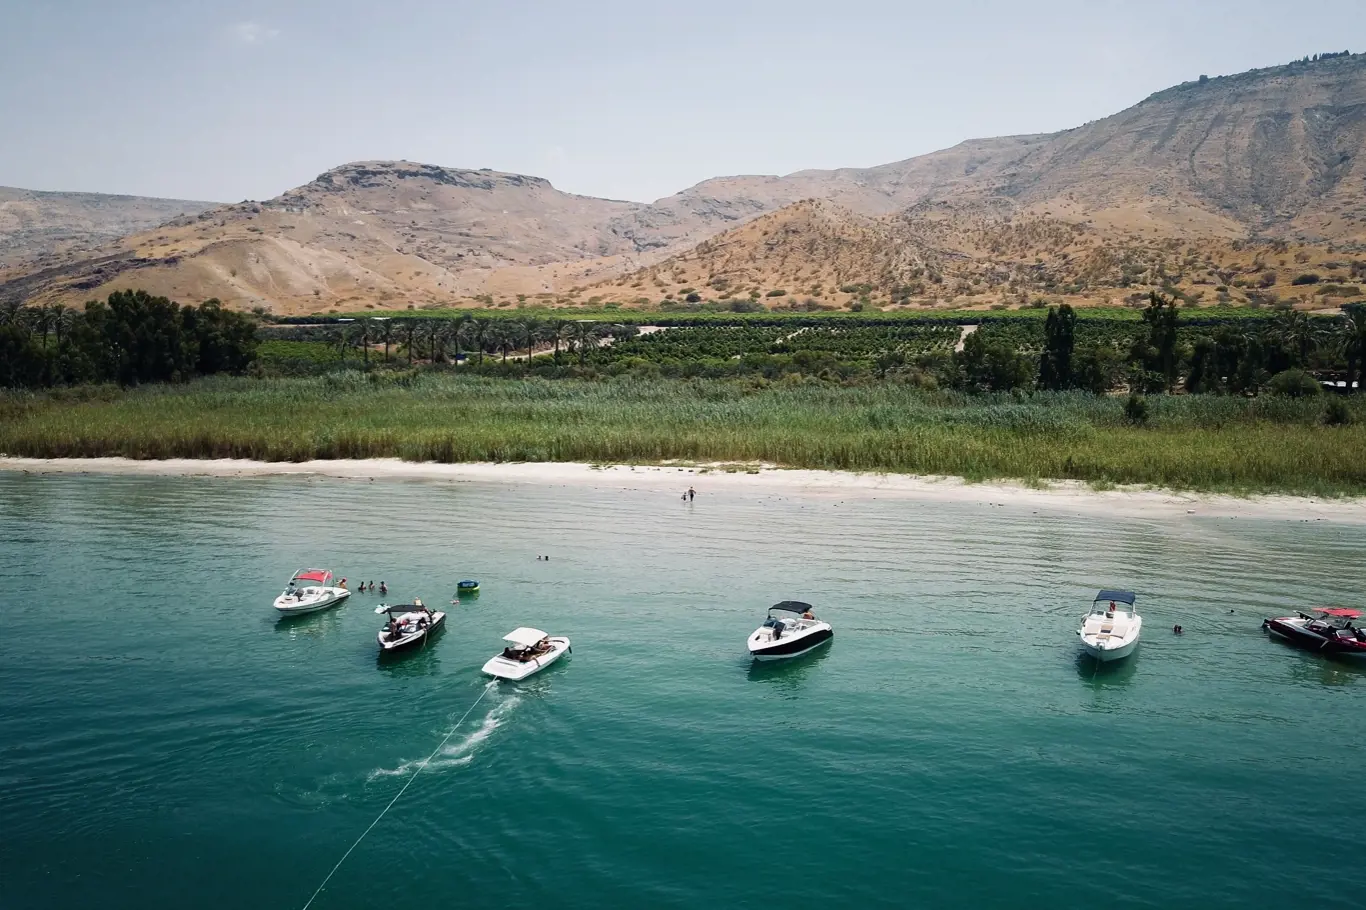 Galilejské jezero v Izraeli